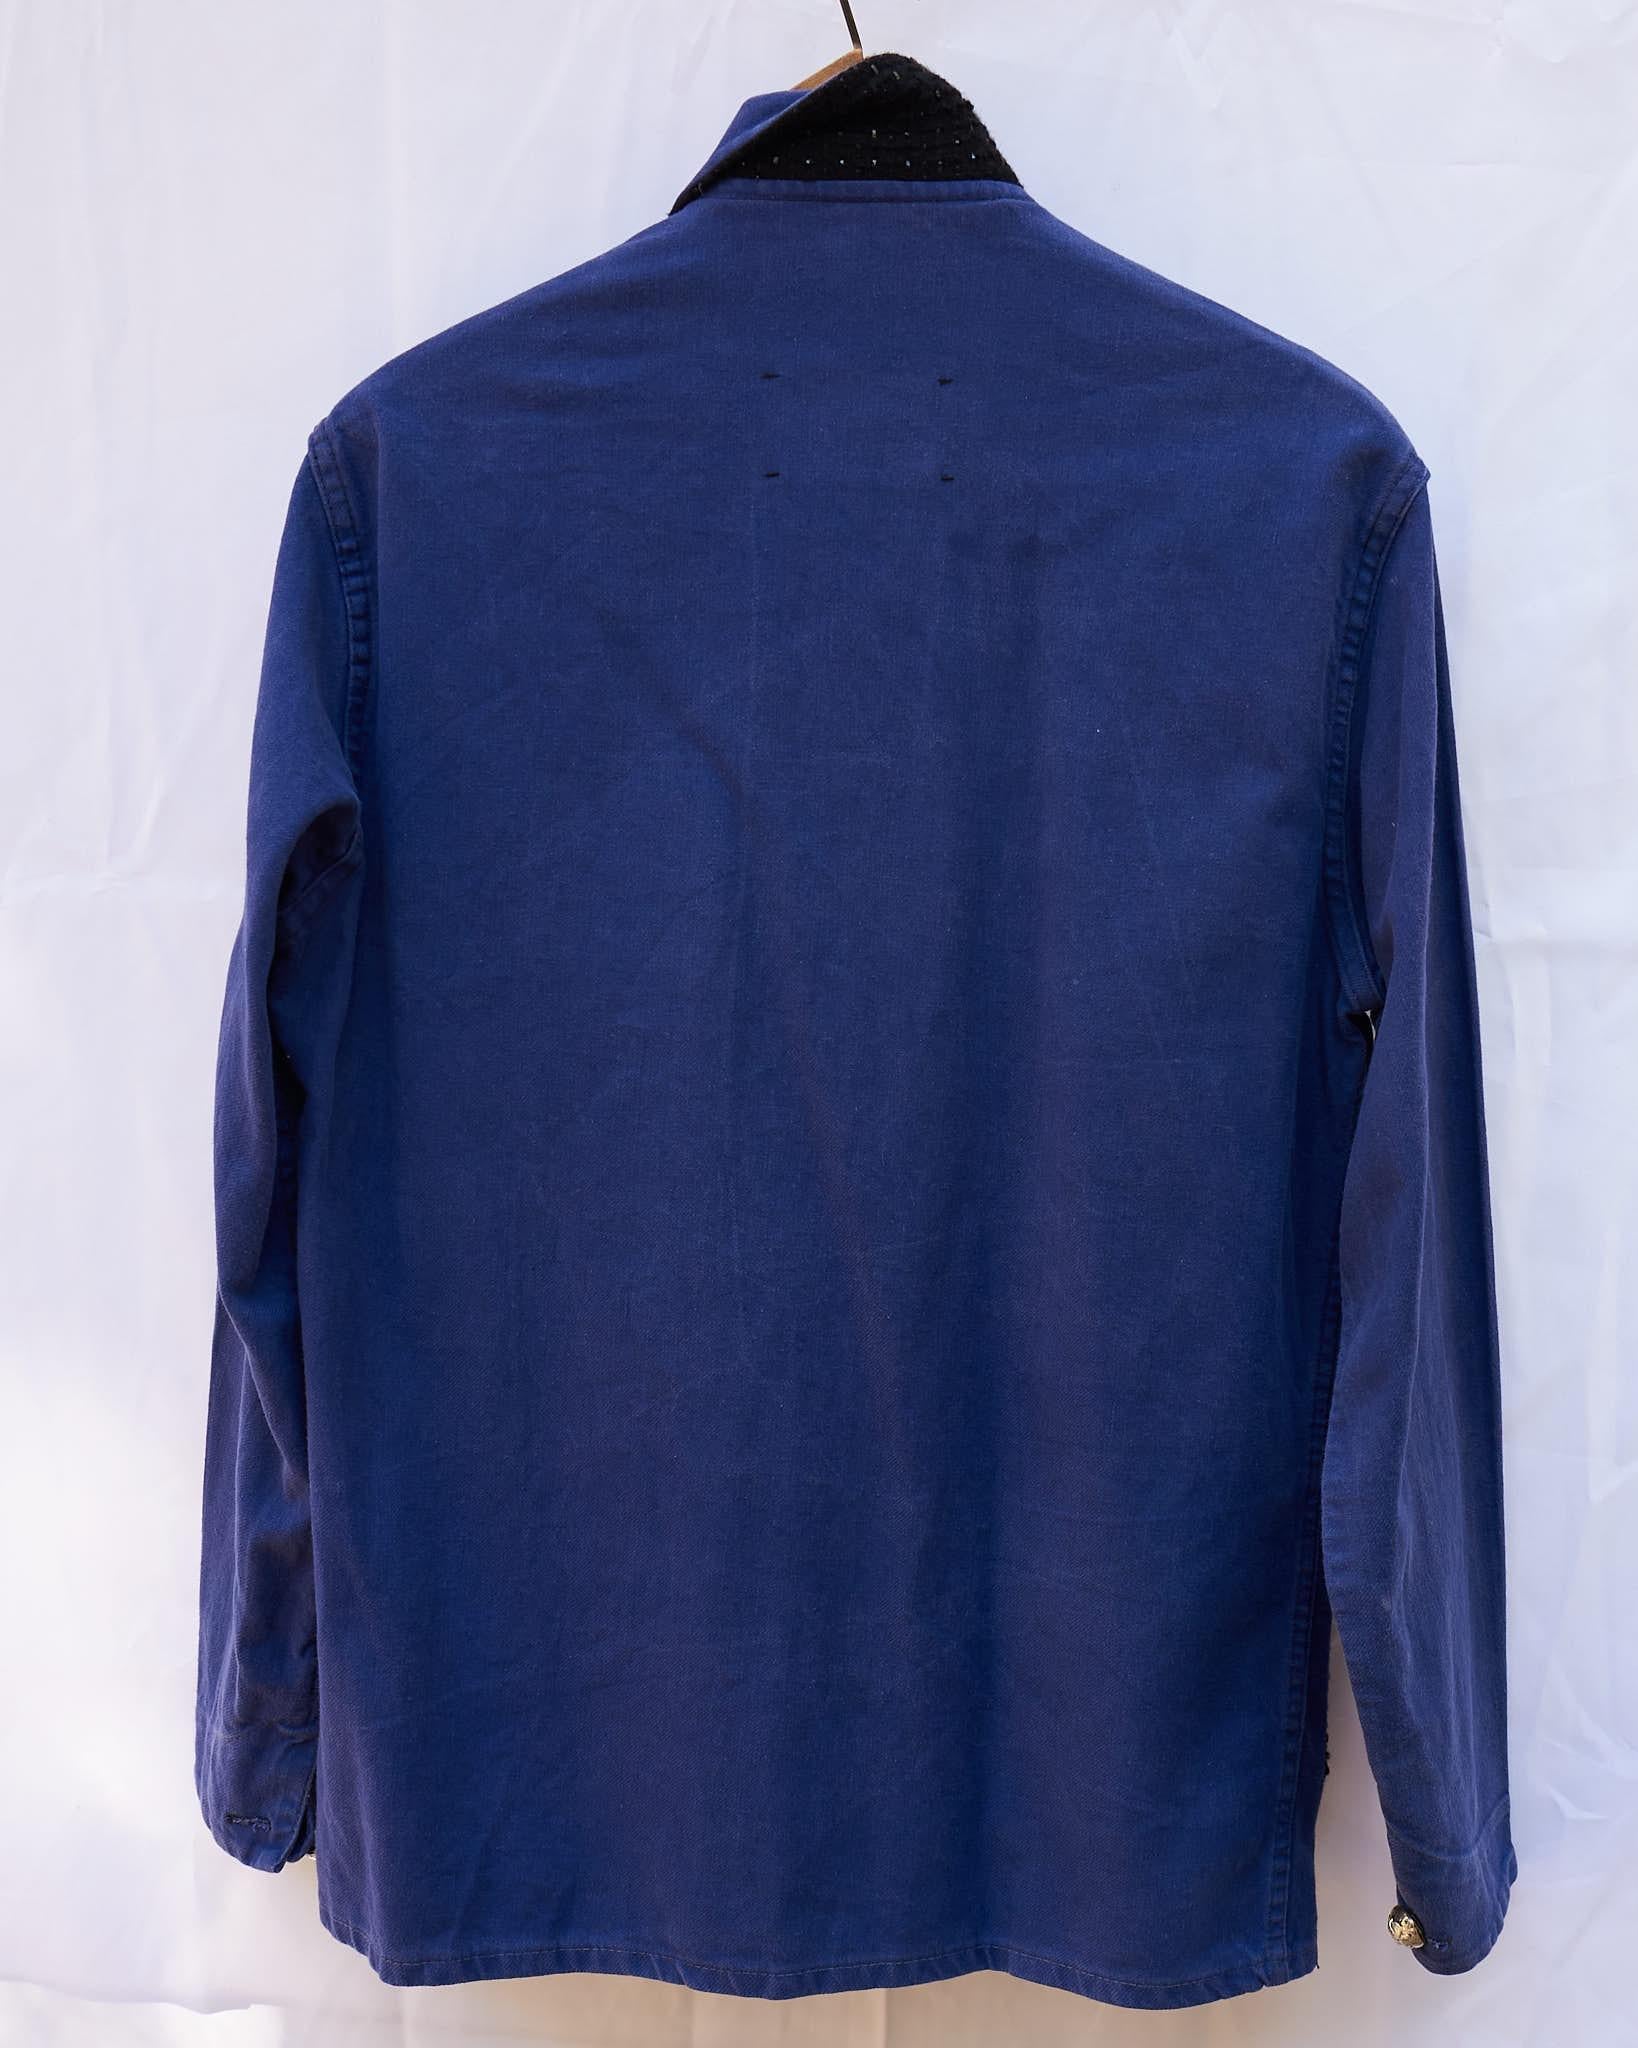 Designer Collectible Vintage Jacket Embellished French Work Blue Tweed J Dauphin 4